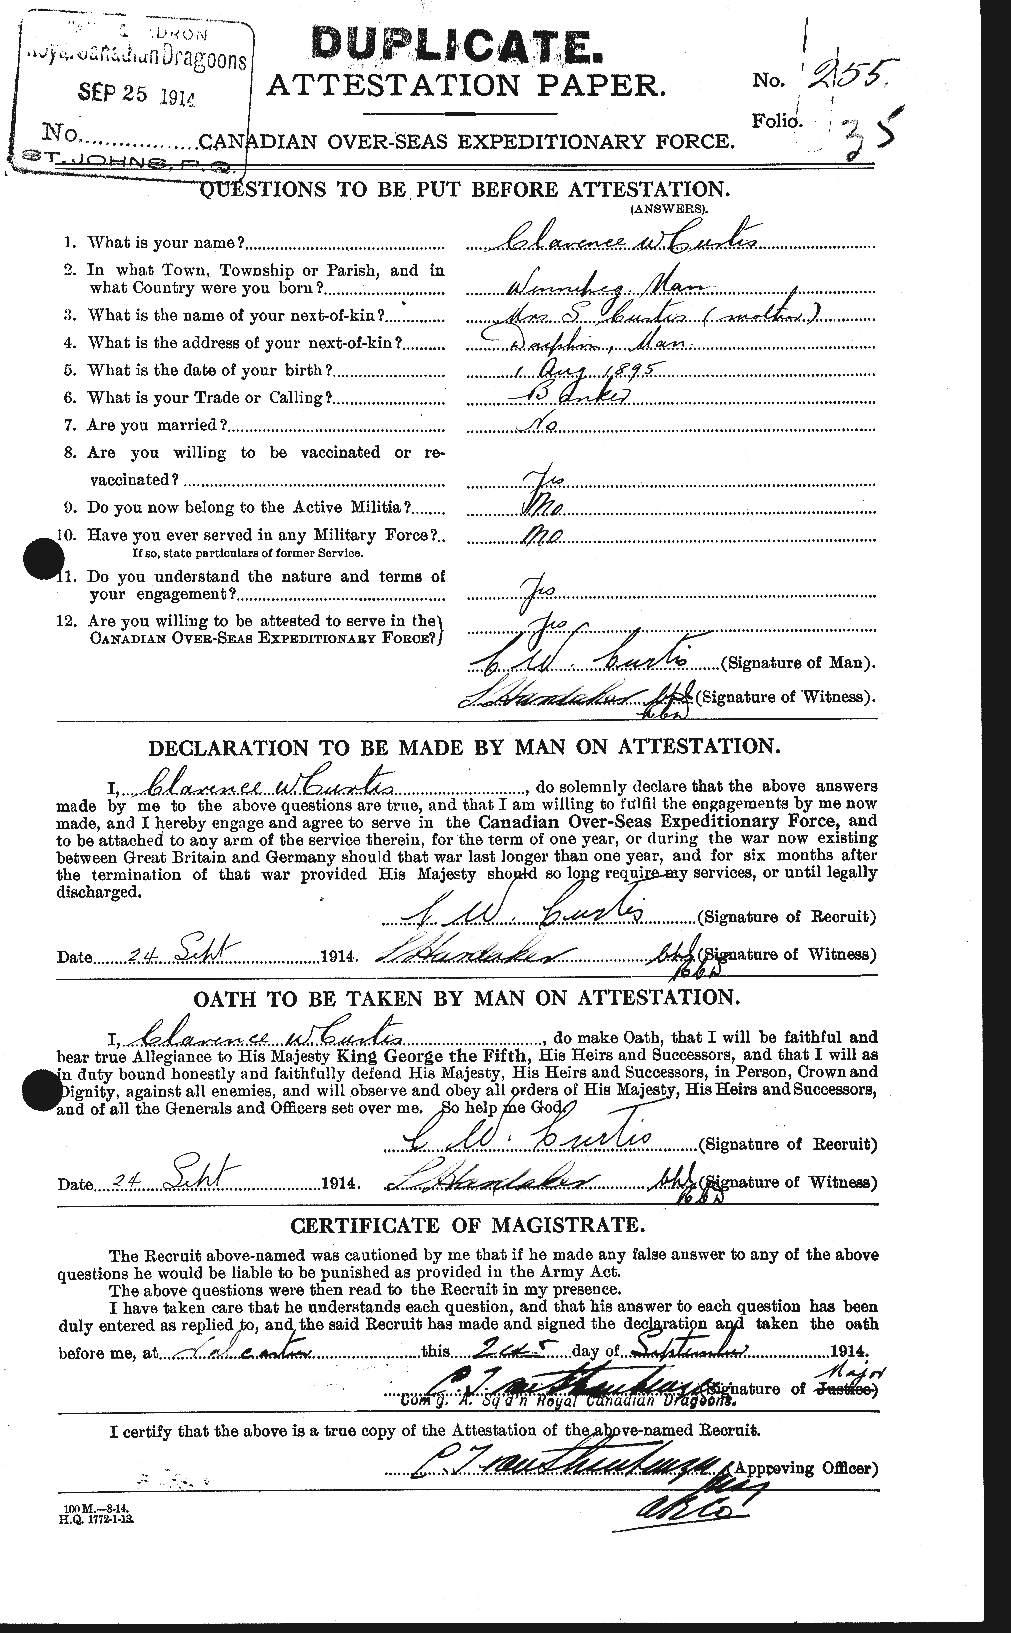 Dossiers du Personnel de la Première Guerre mondiale - CEC 072580a